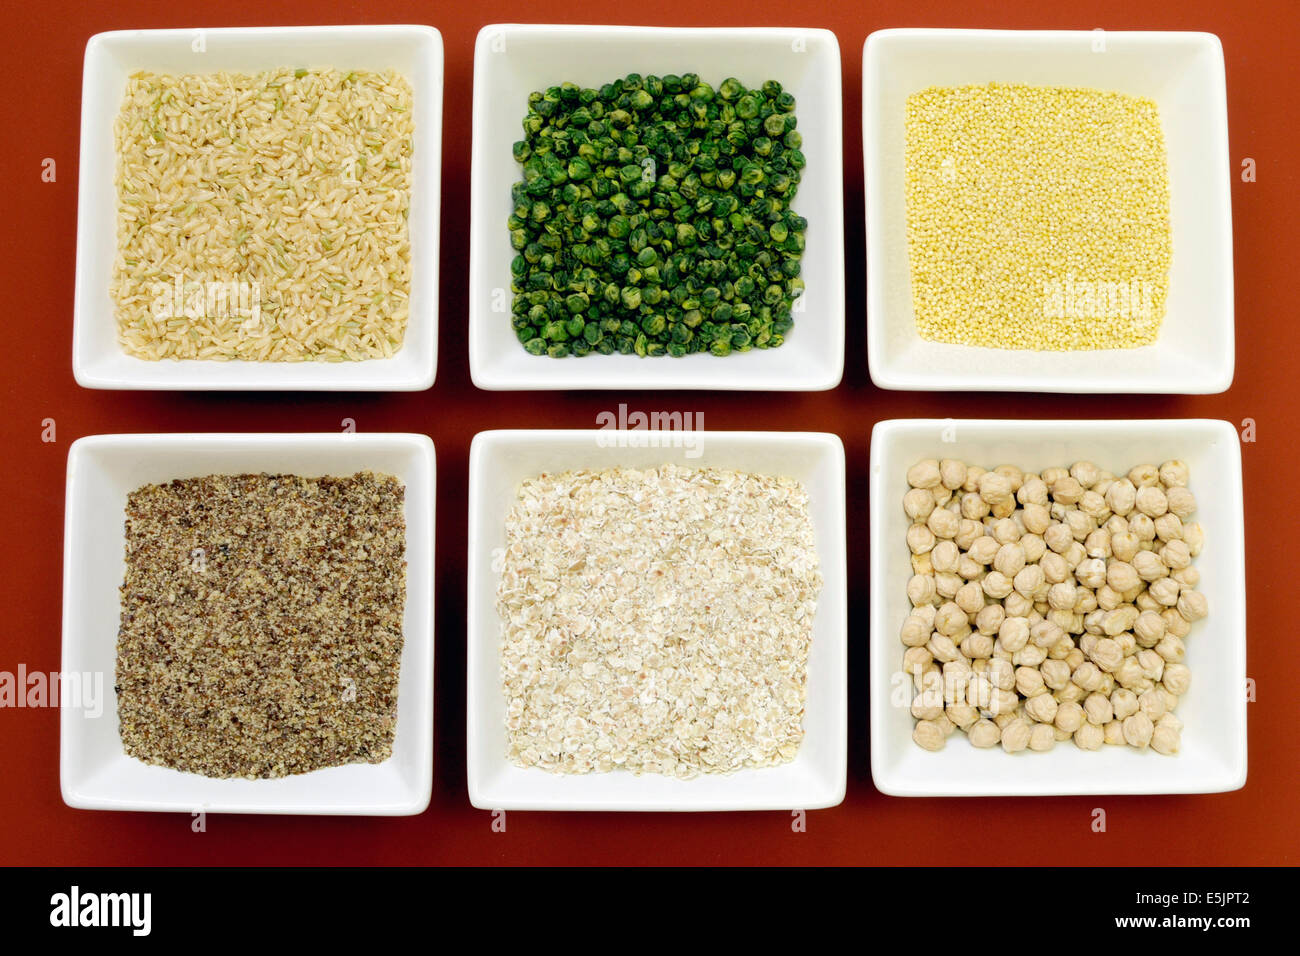 Cereales sin gluten comida: arroz integral, mijo, trigo sarraceno LSA, hojuelas y los garbanzos y arvejas verdes legumbres - para una dieta saludable. Foto de stock